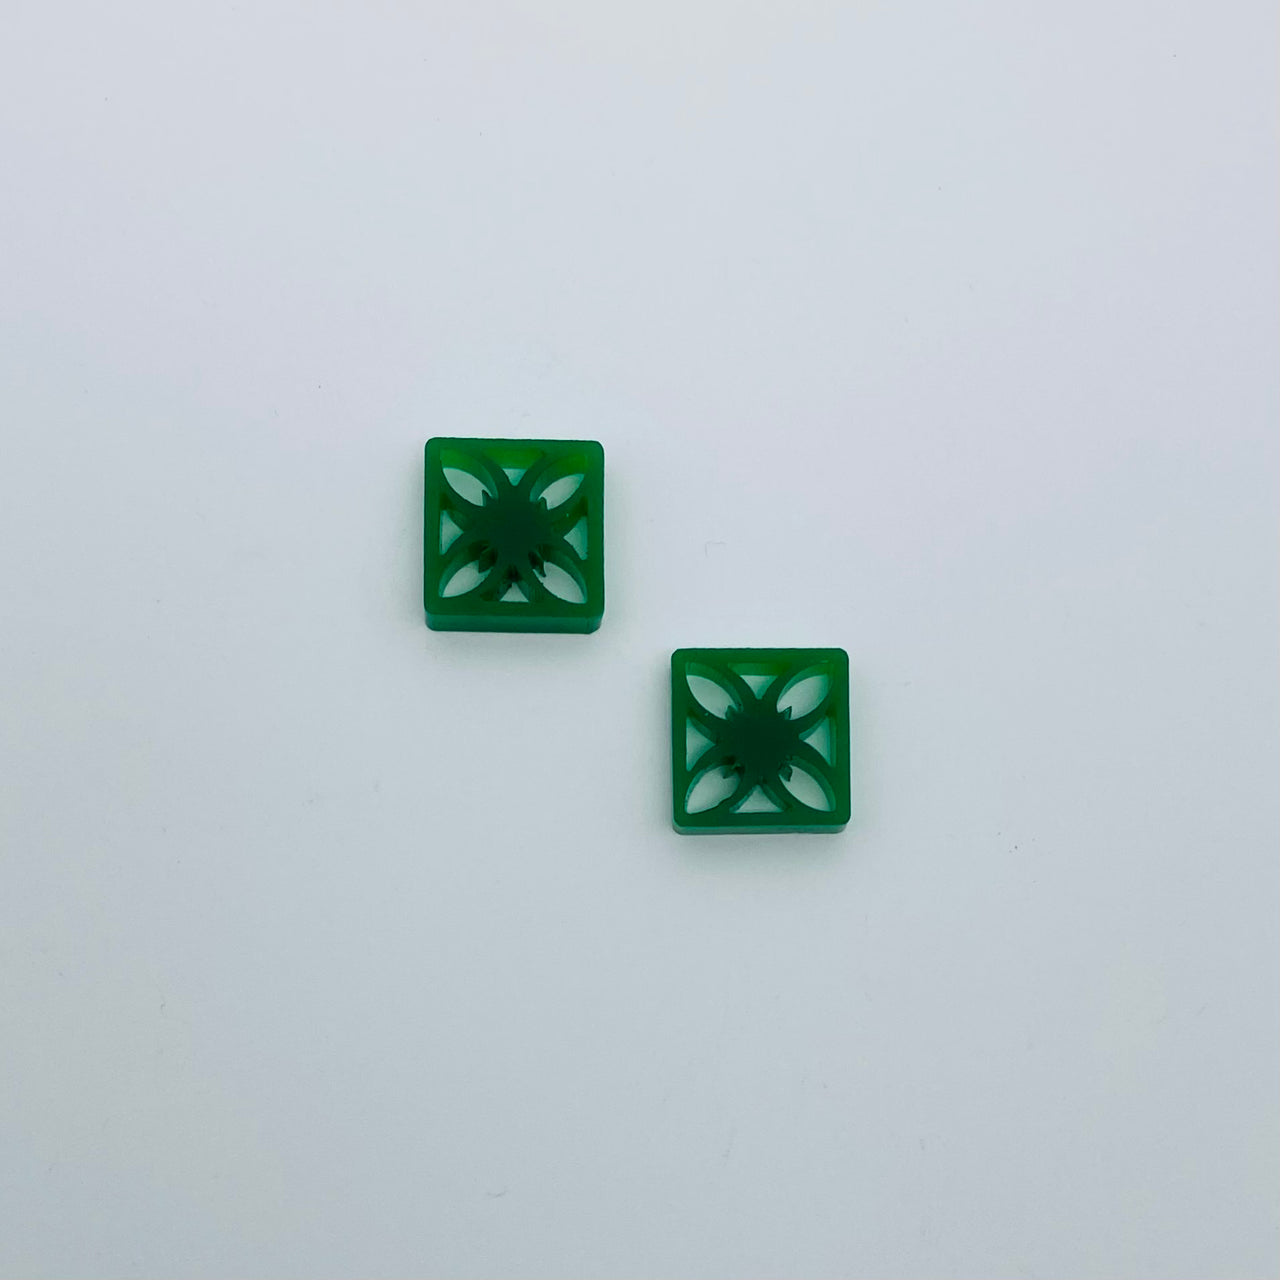 Flare Tiki Tapa Earrings in Dark Green